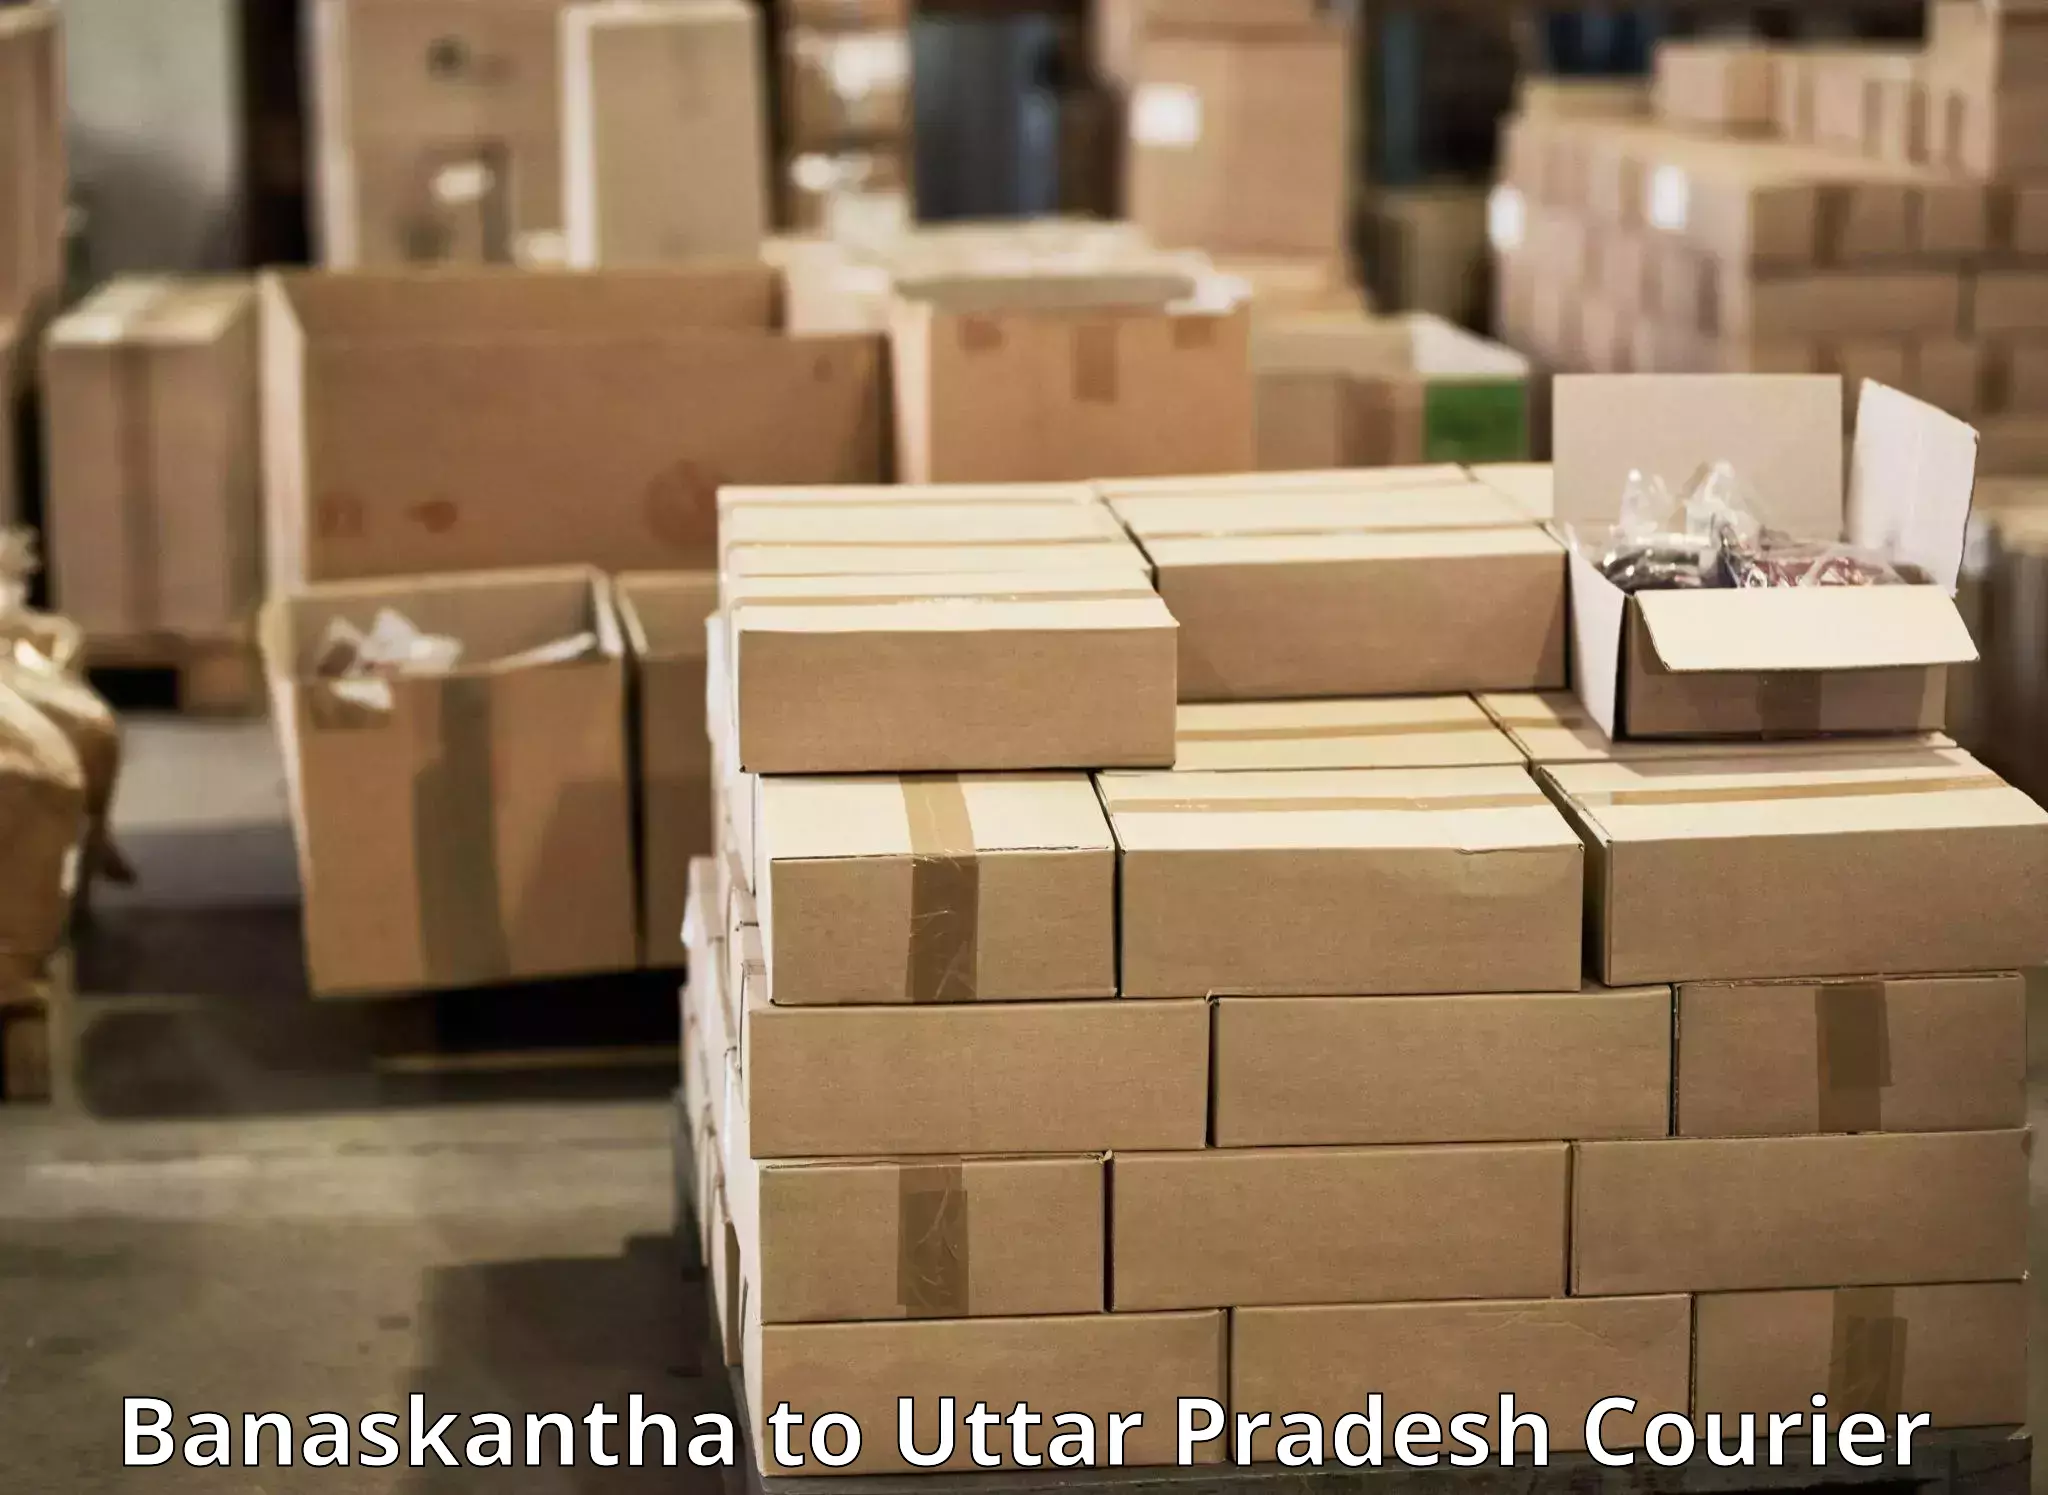 High-capacity parcel service Banaskantha to Kurebhar